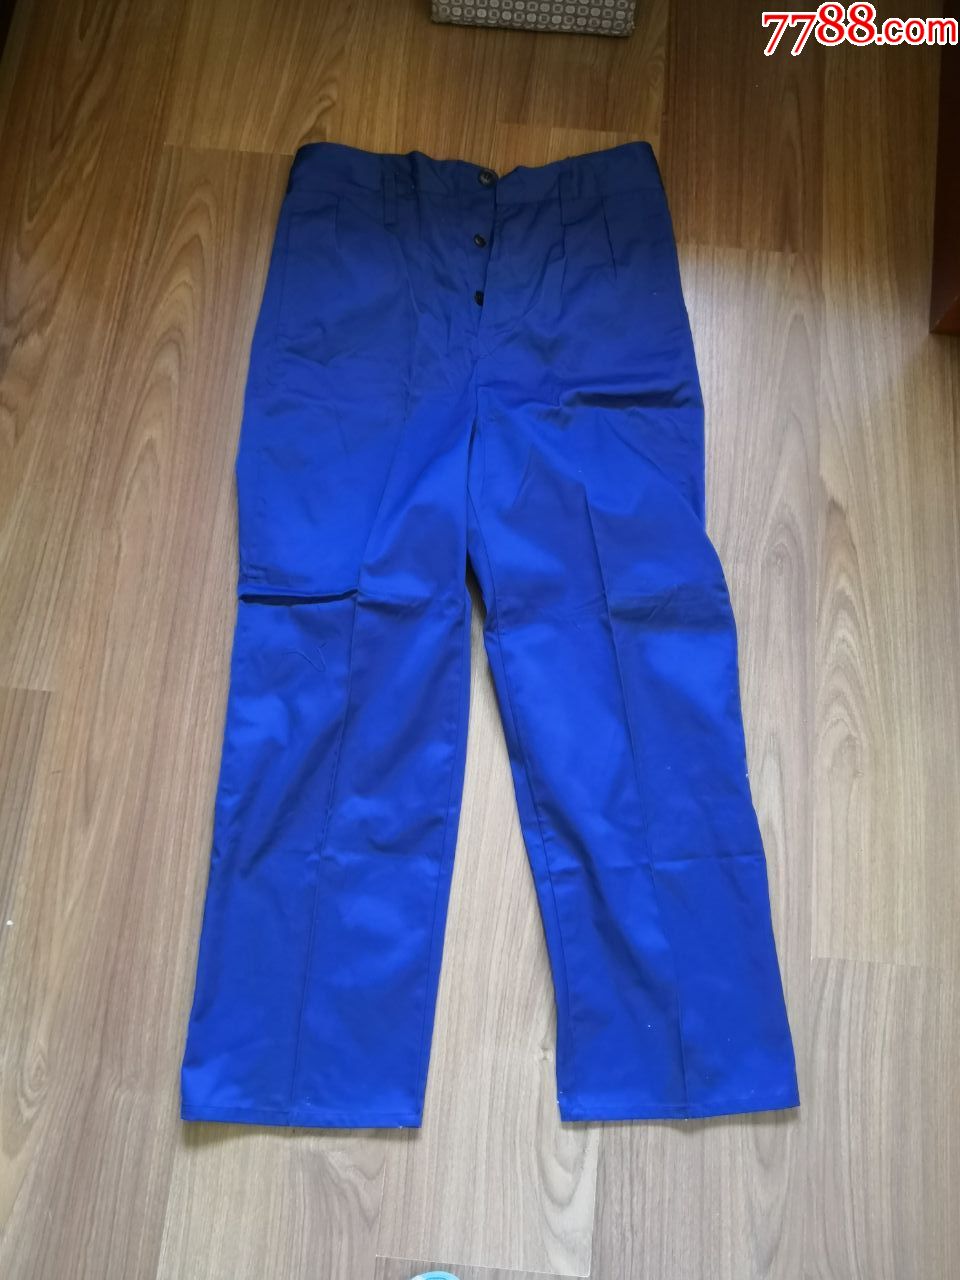 70年代老式蓝色运动裤图片